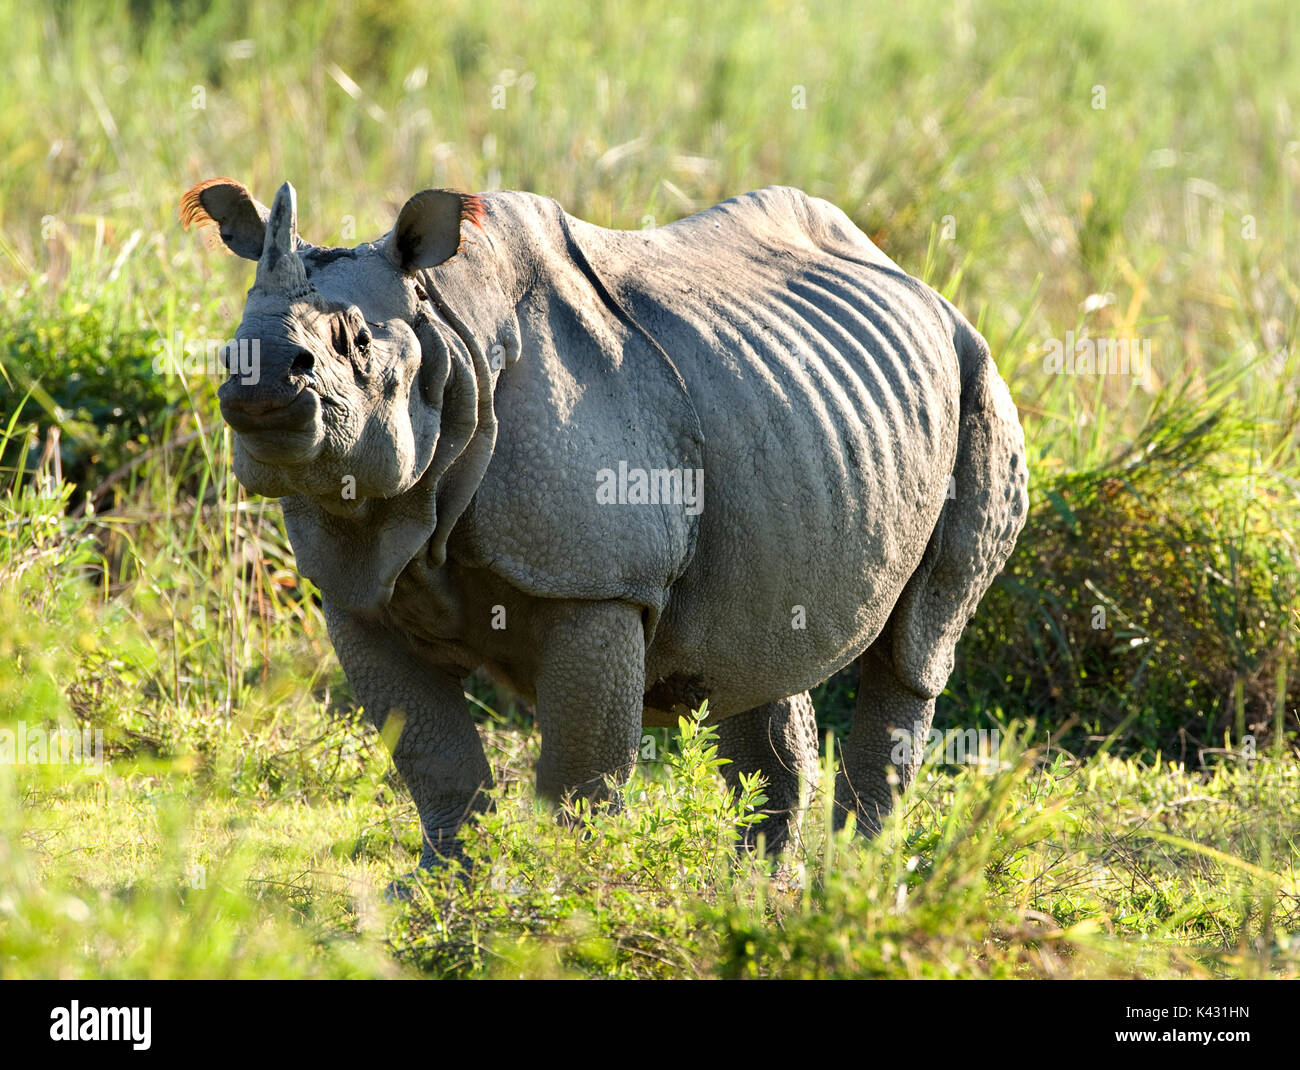 Rhinocéros indien, Rhinoceros unicornis, parc national de Kaziranga, Assam, Inde, patrimoine mondial et l'UICN UICN Catégorie II Site, 2004 en danger, vulnérable, o Banque D'Images